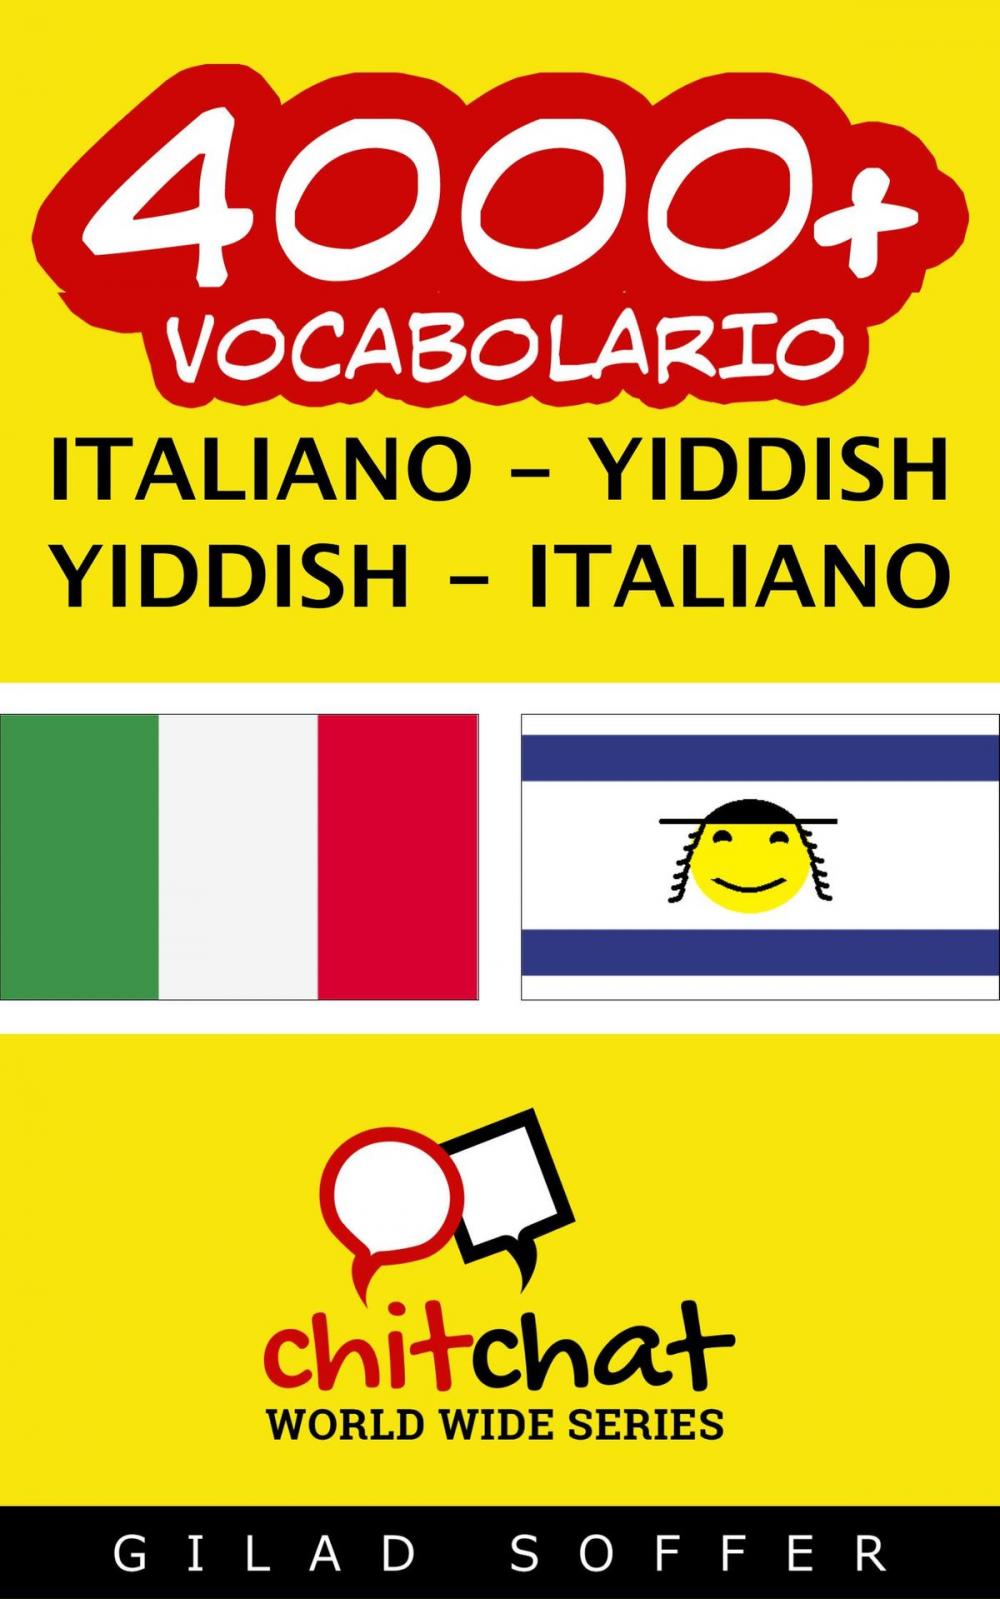 Big bigCover of 4000+ vocabolario Italiano - Yiddish